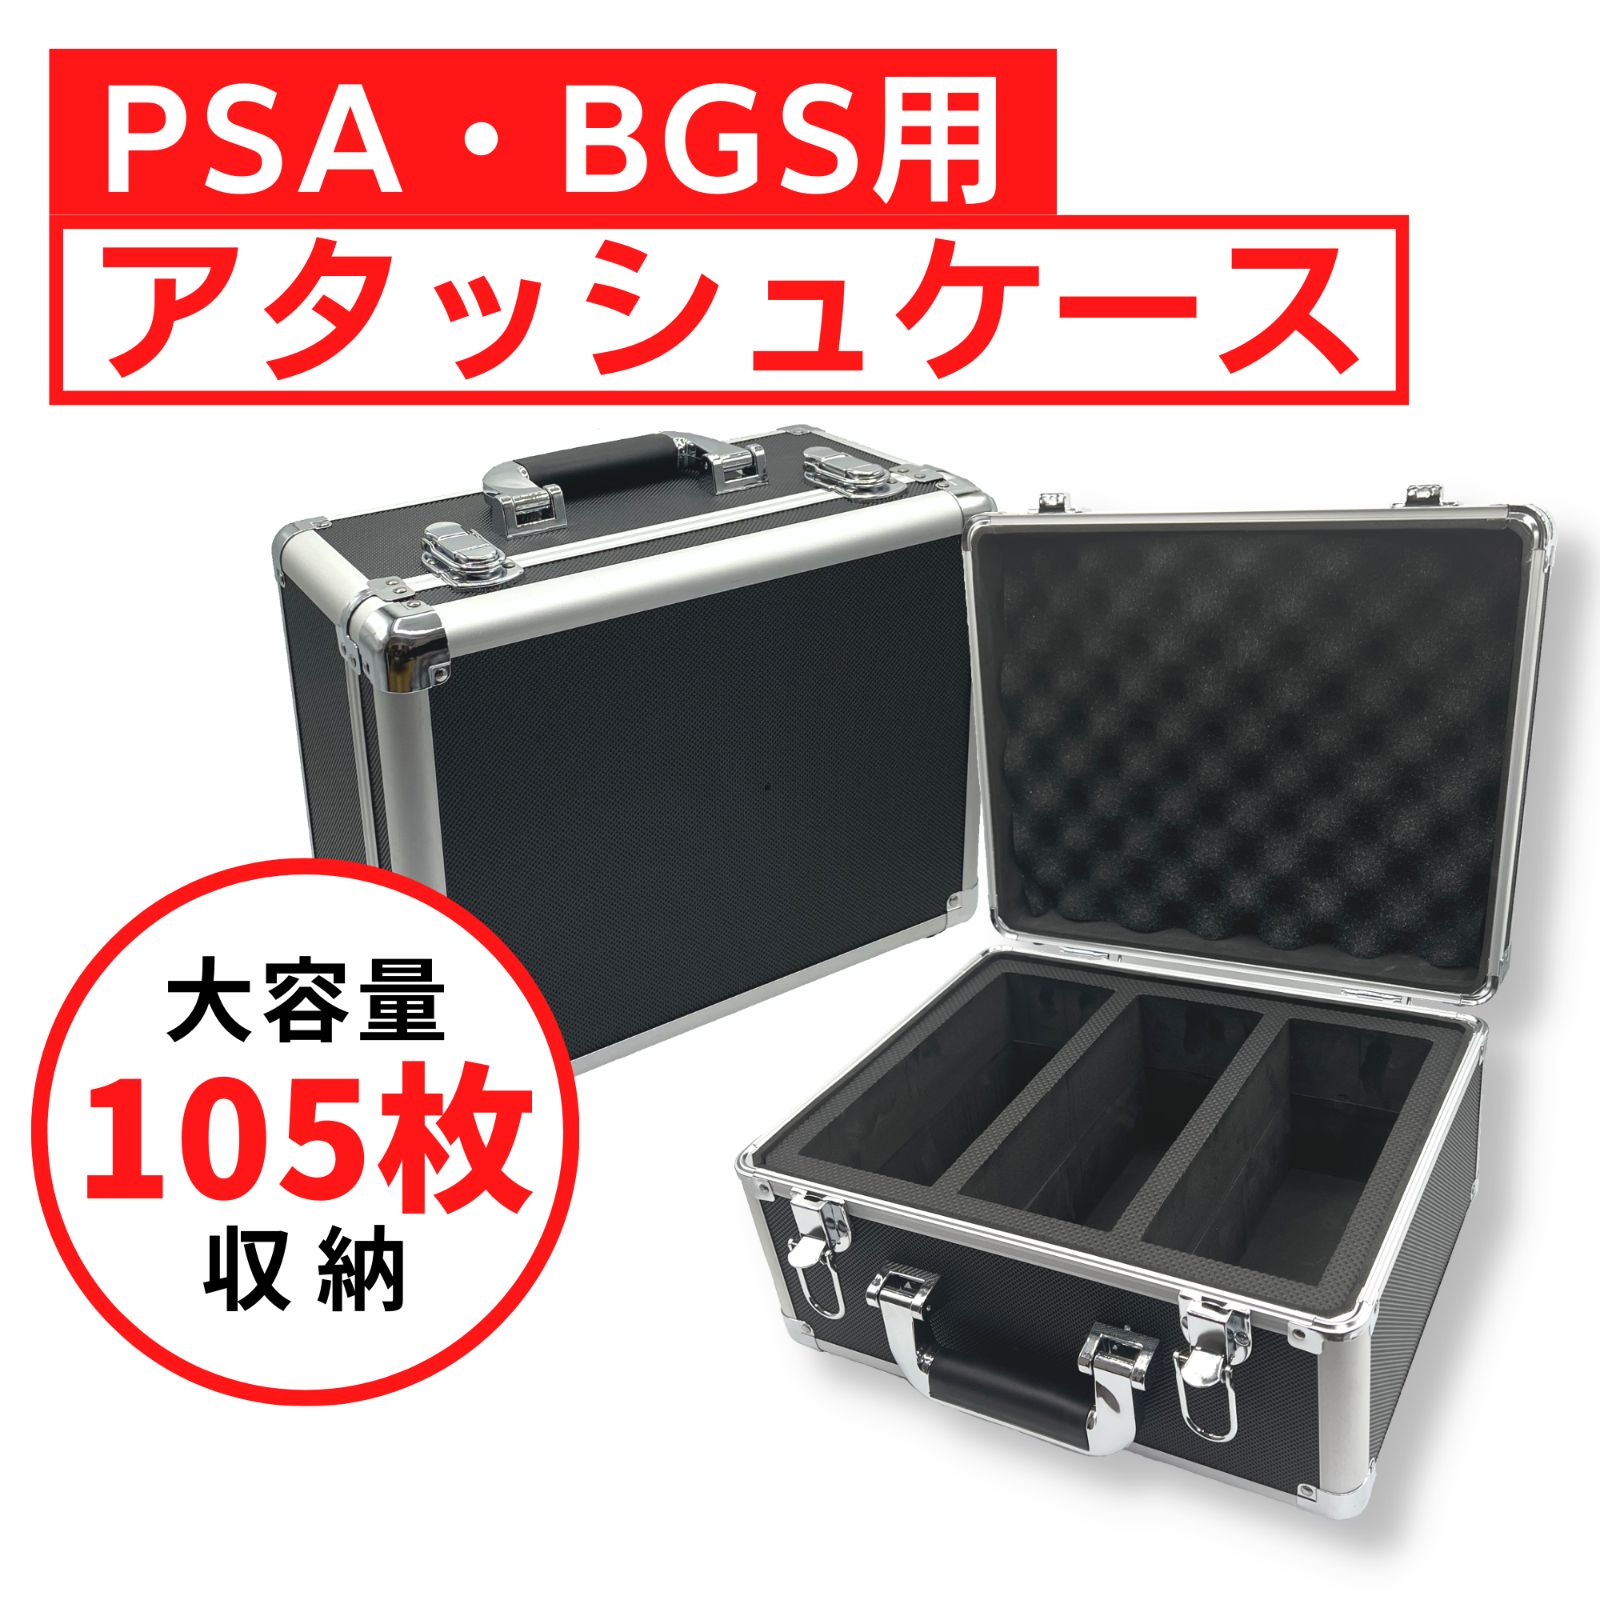 PSA BGS 保管用 アタッシュケース 105枚収納 ストレージボックス ARS 